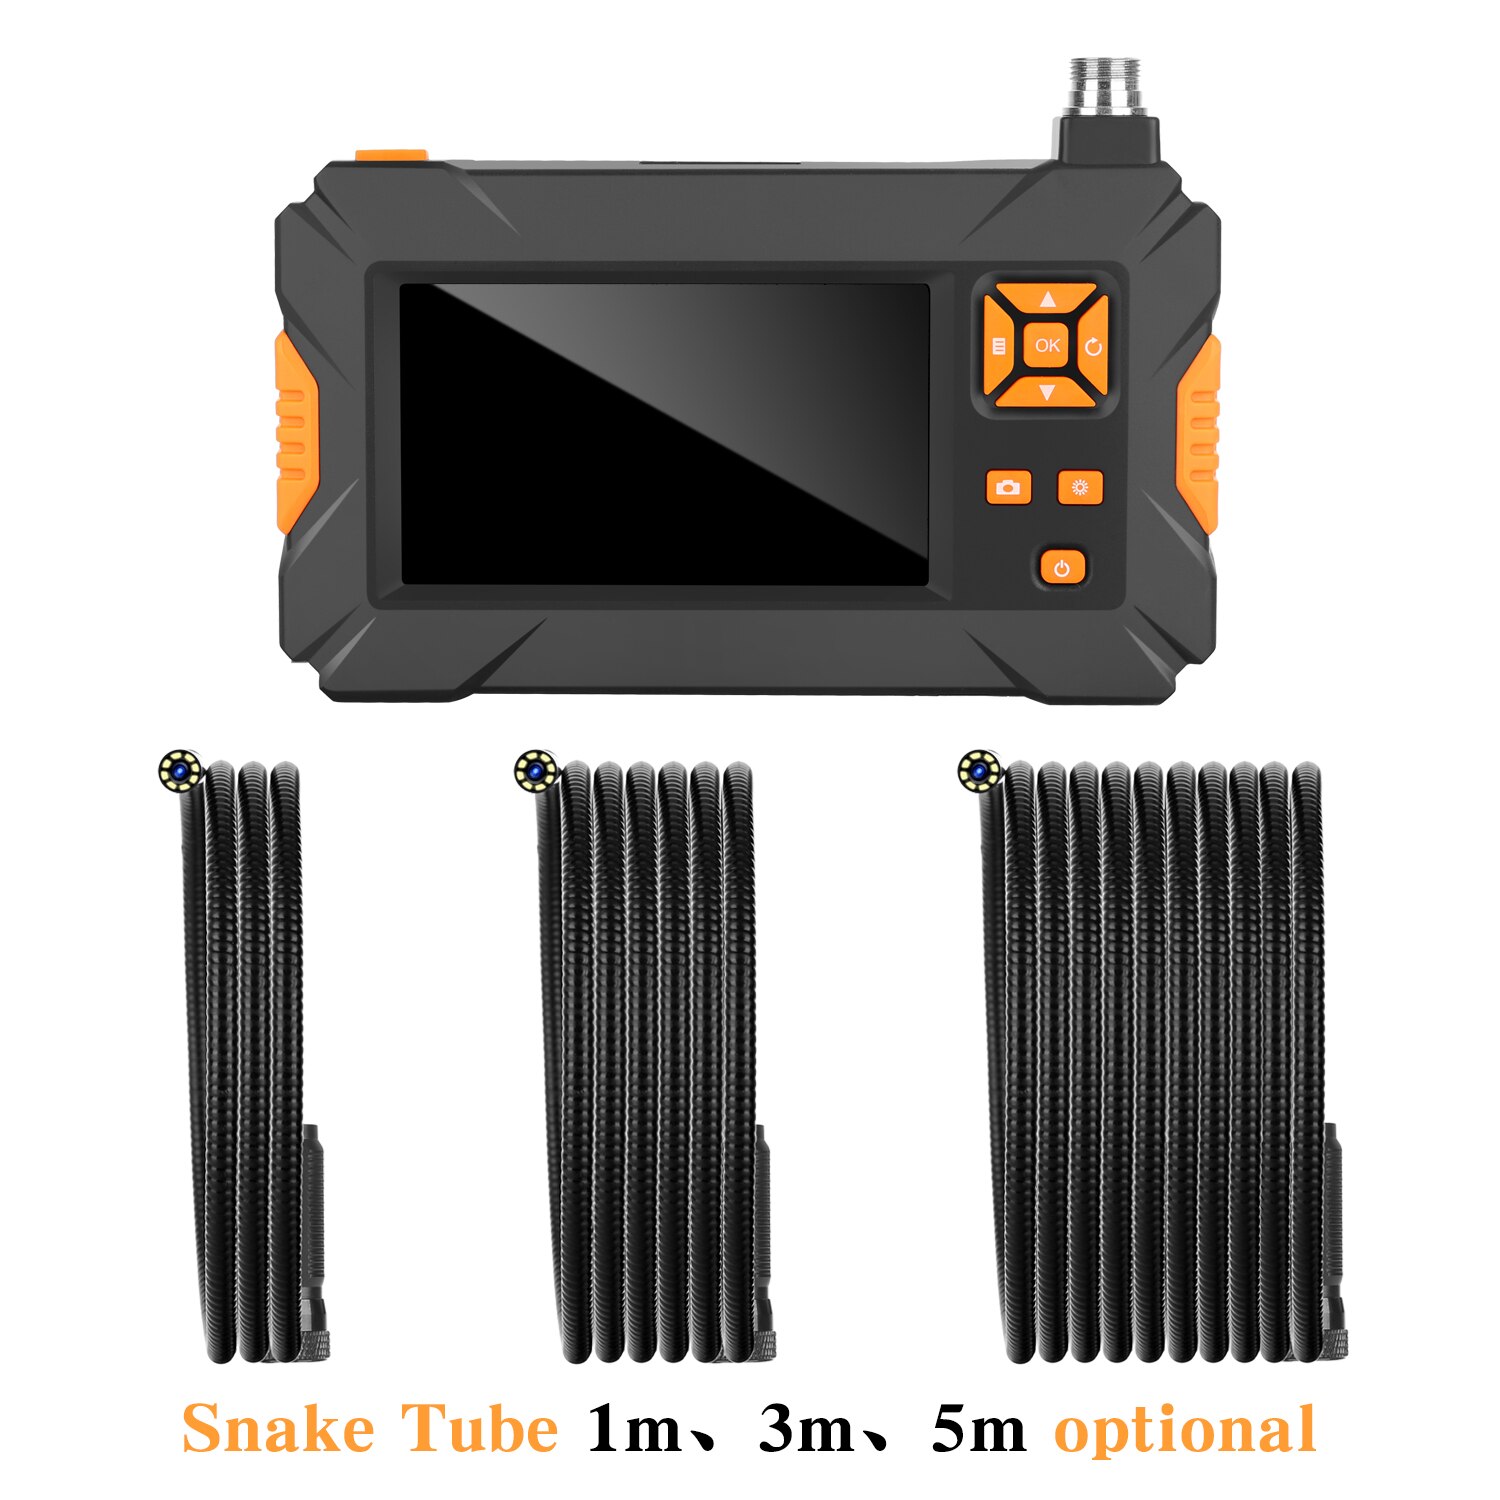 4.3- tommer farve lcd hd håndholdt skærm endoskop 1080p p30 orange konfigurerbare slange rør hårdtråd industrirør endoskop